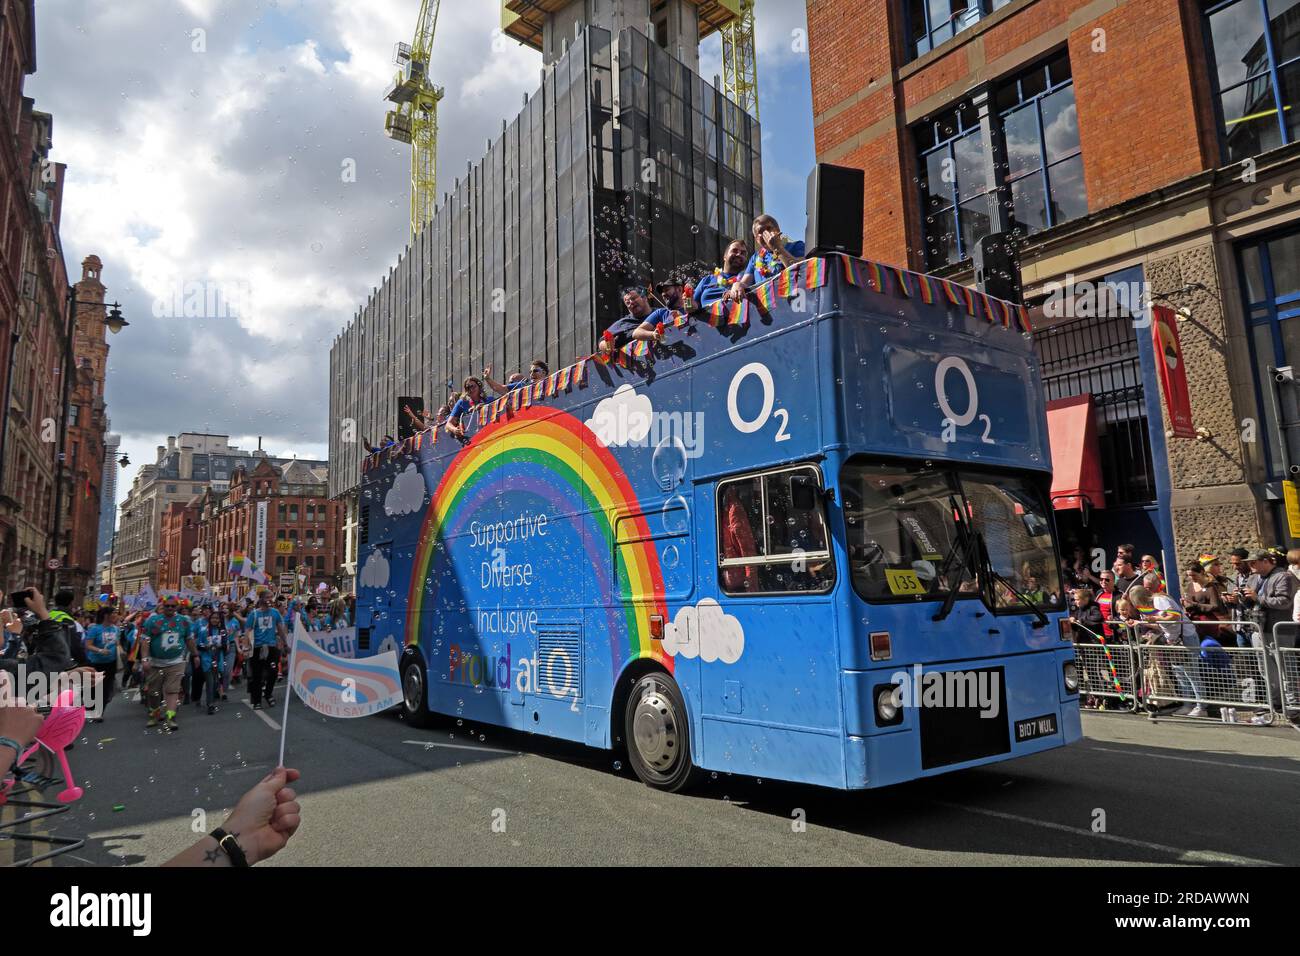 O2 unterstützend, vielfältig, inklusive bei der Manchester Pride Festival Parade, 36 Whitworth Street, Manchester, England, Großbritannien, M1 3NR Stockfoto